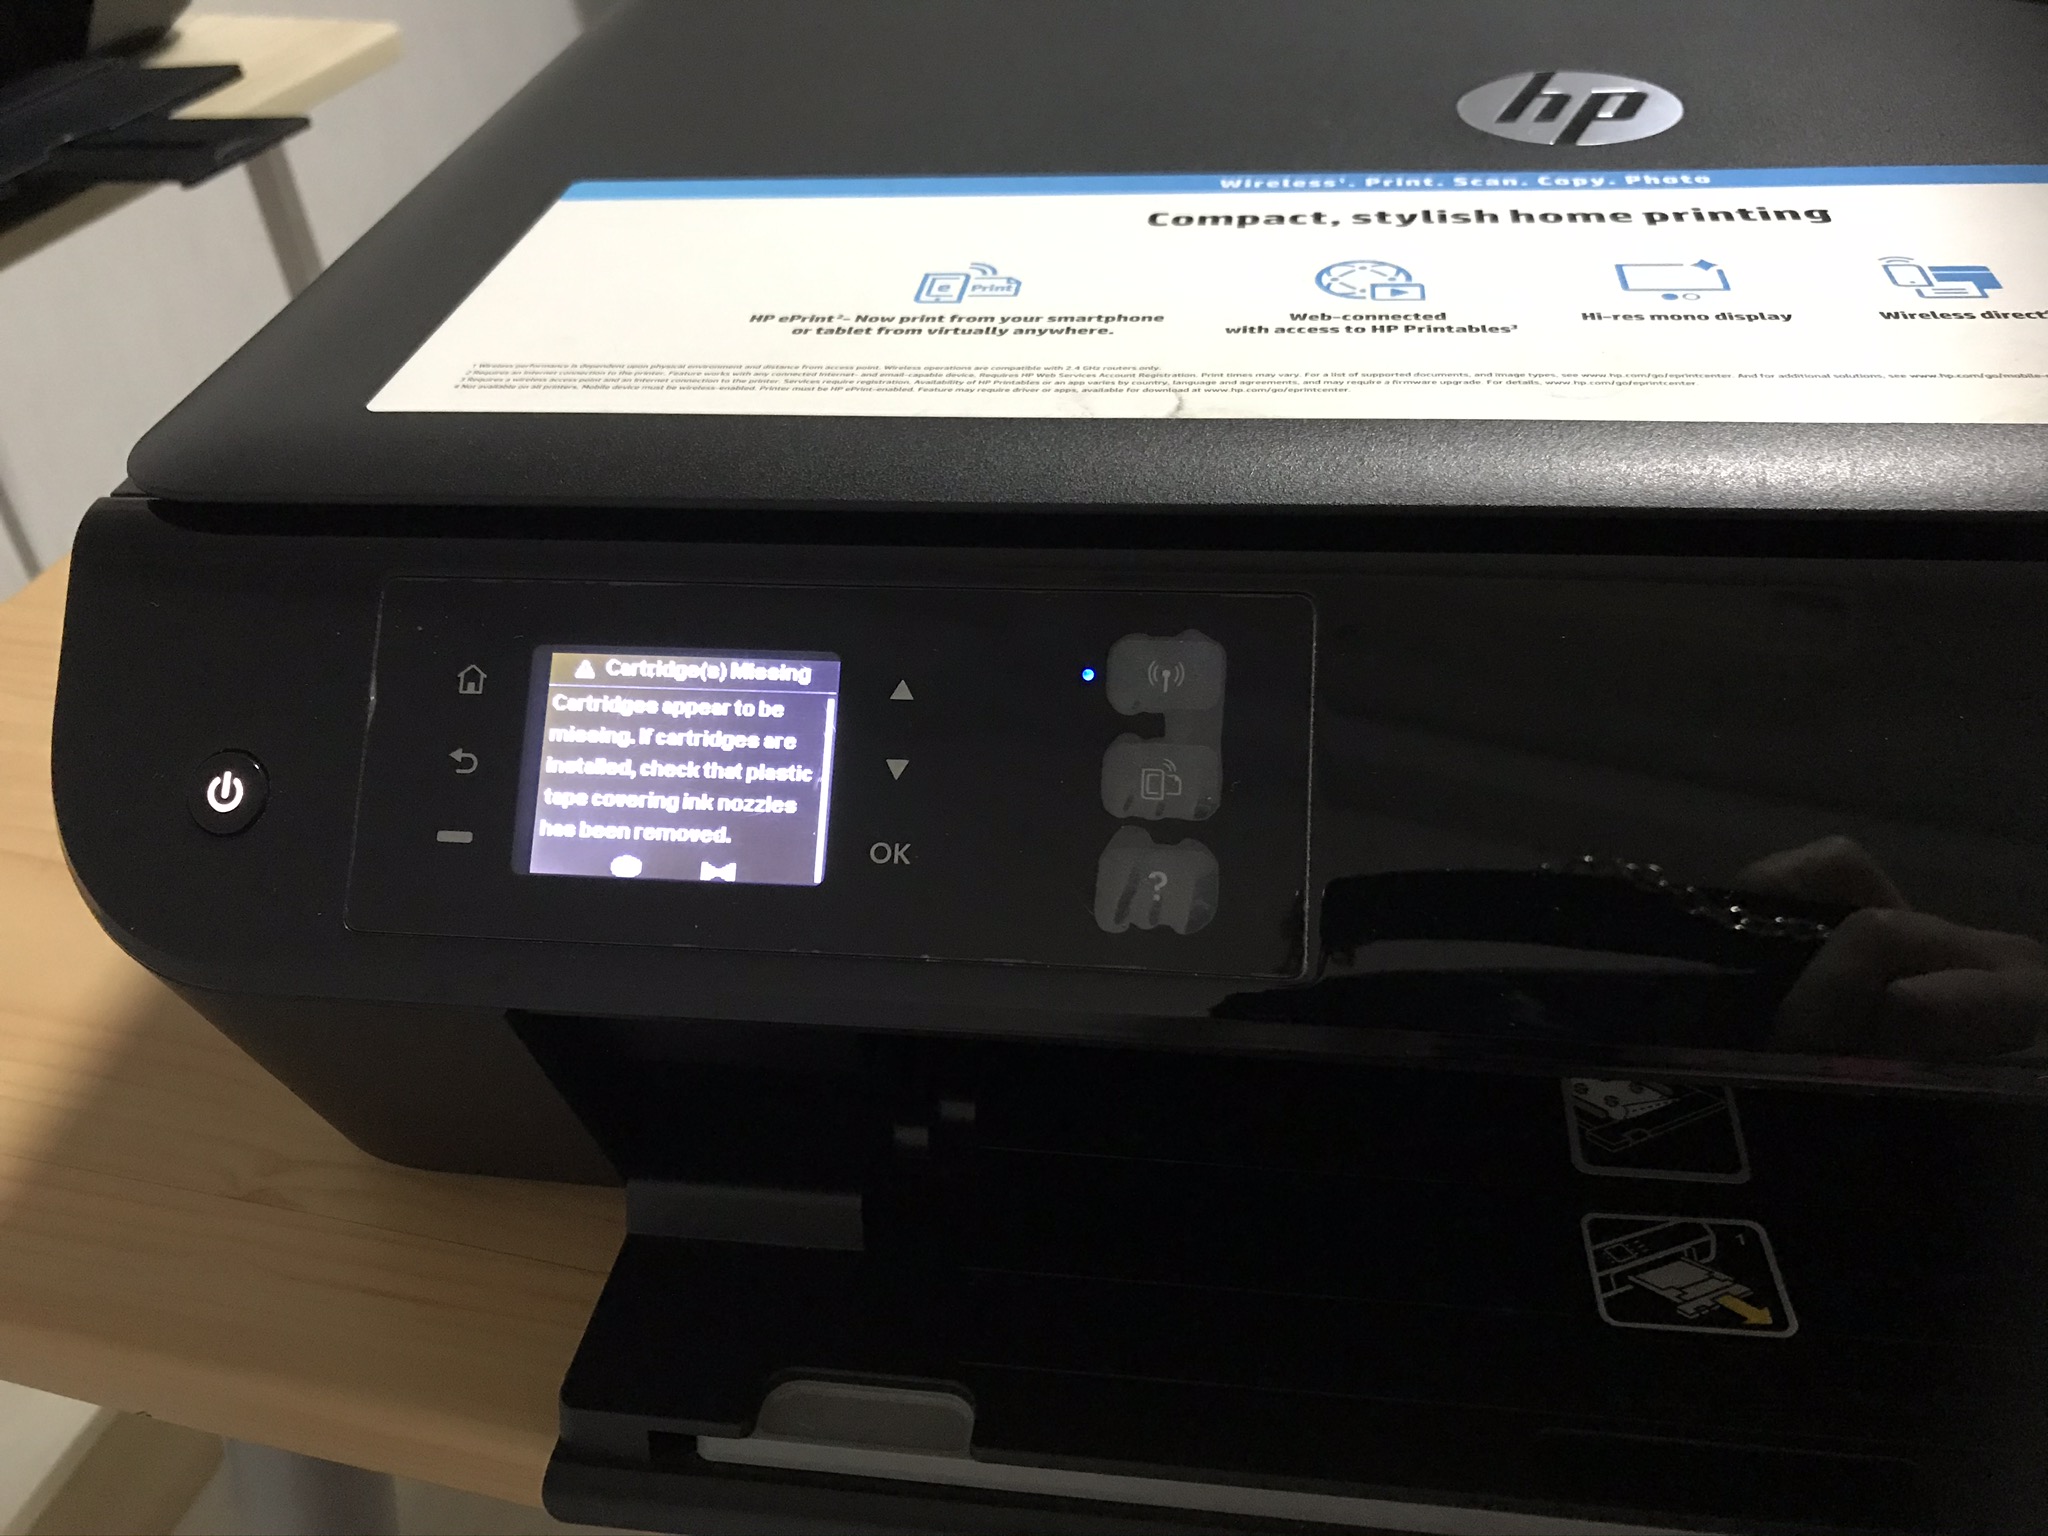 HP envy 4500 打印机 50出